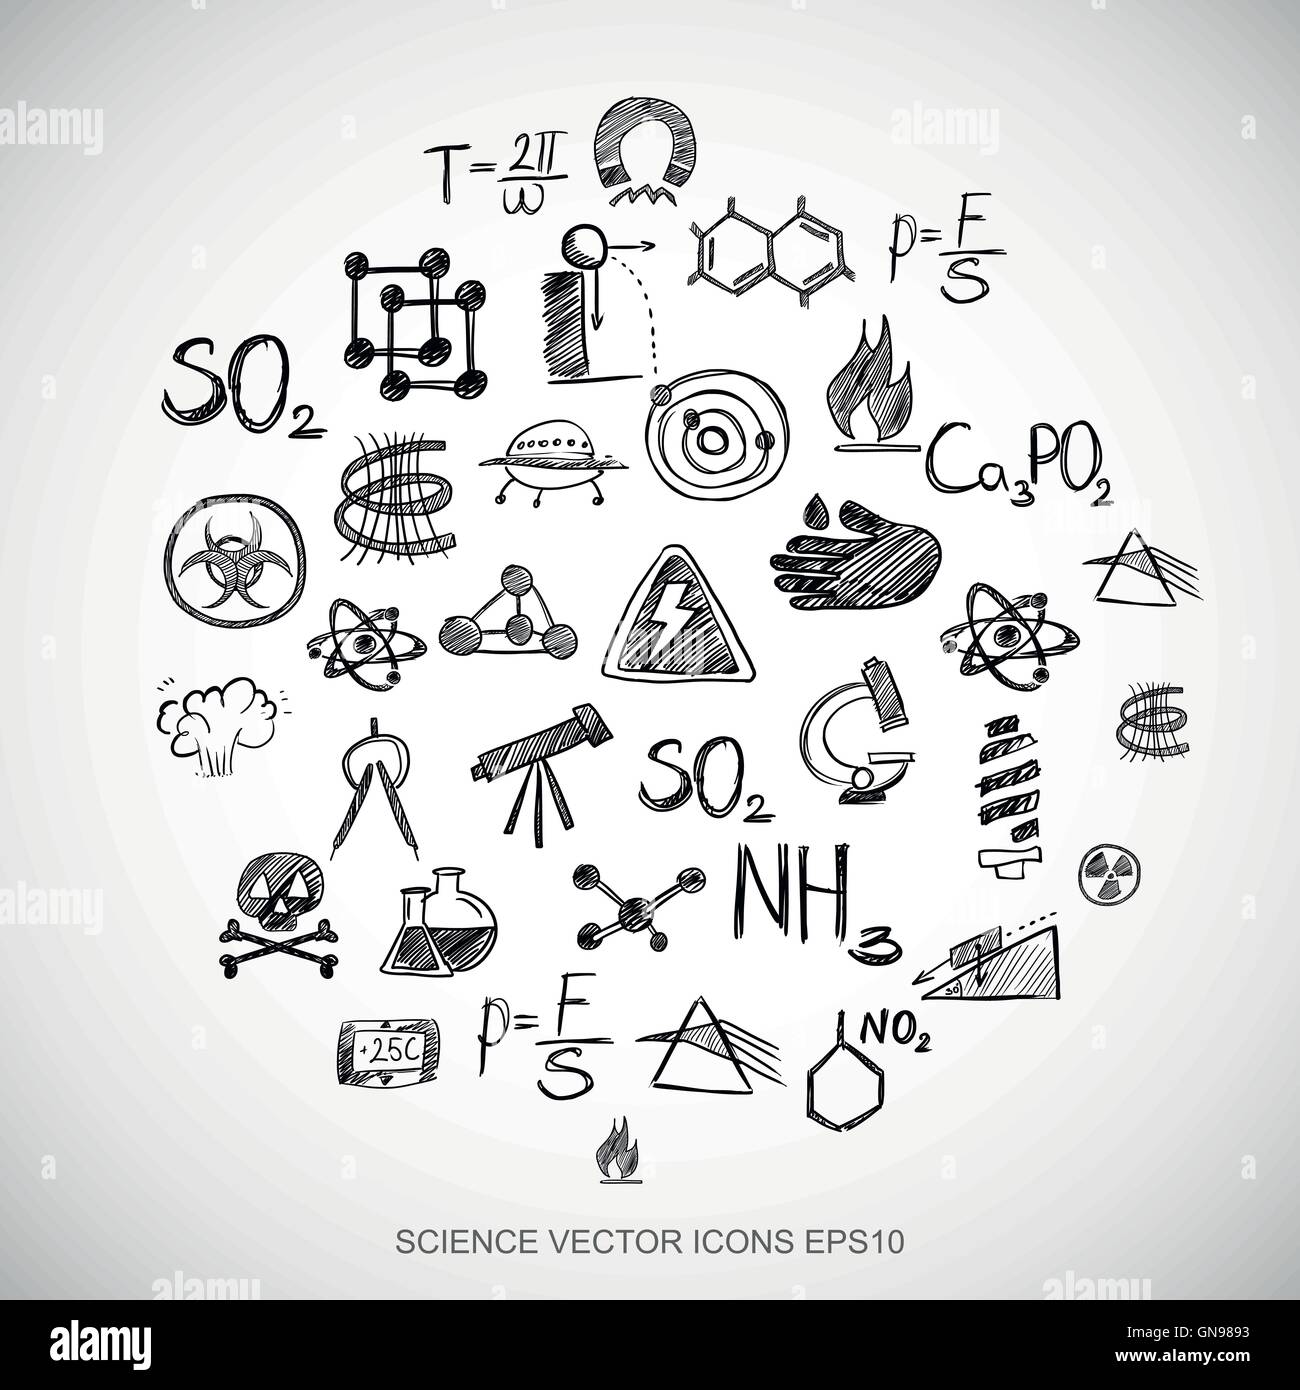 Gribouillages noirs Sciences dessiné à la main Icons set sur blanc. EPS10 vector illustration. Illustration de Vecteur